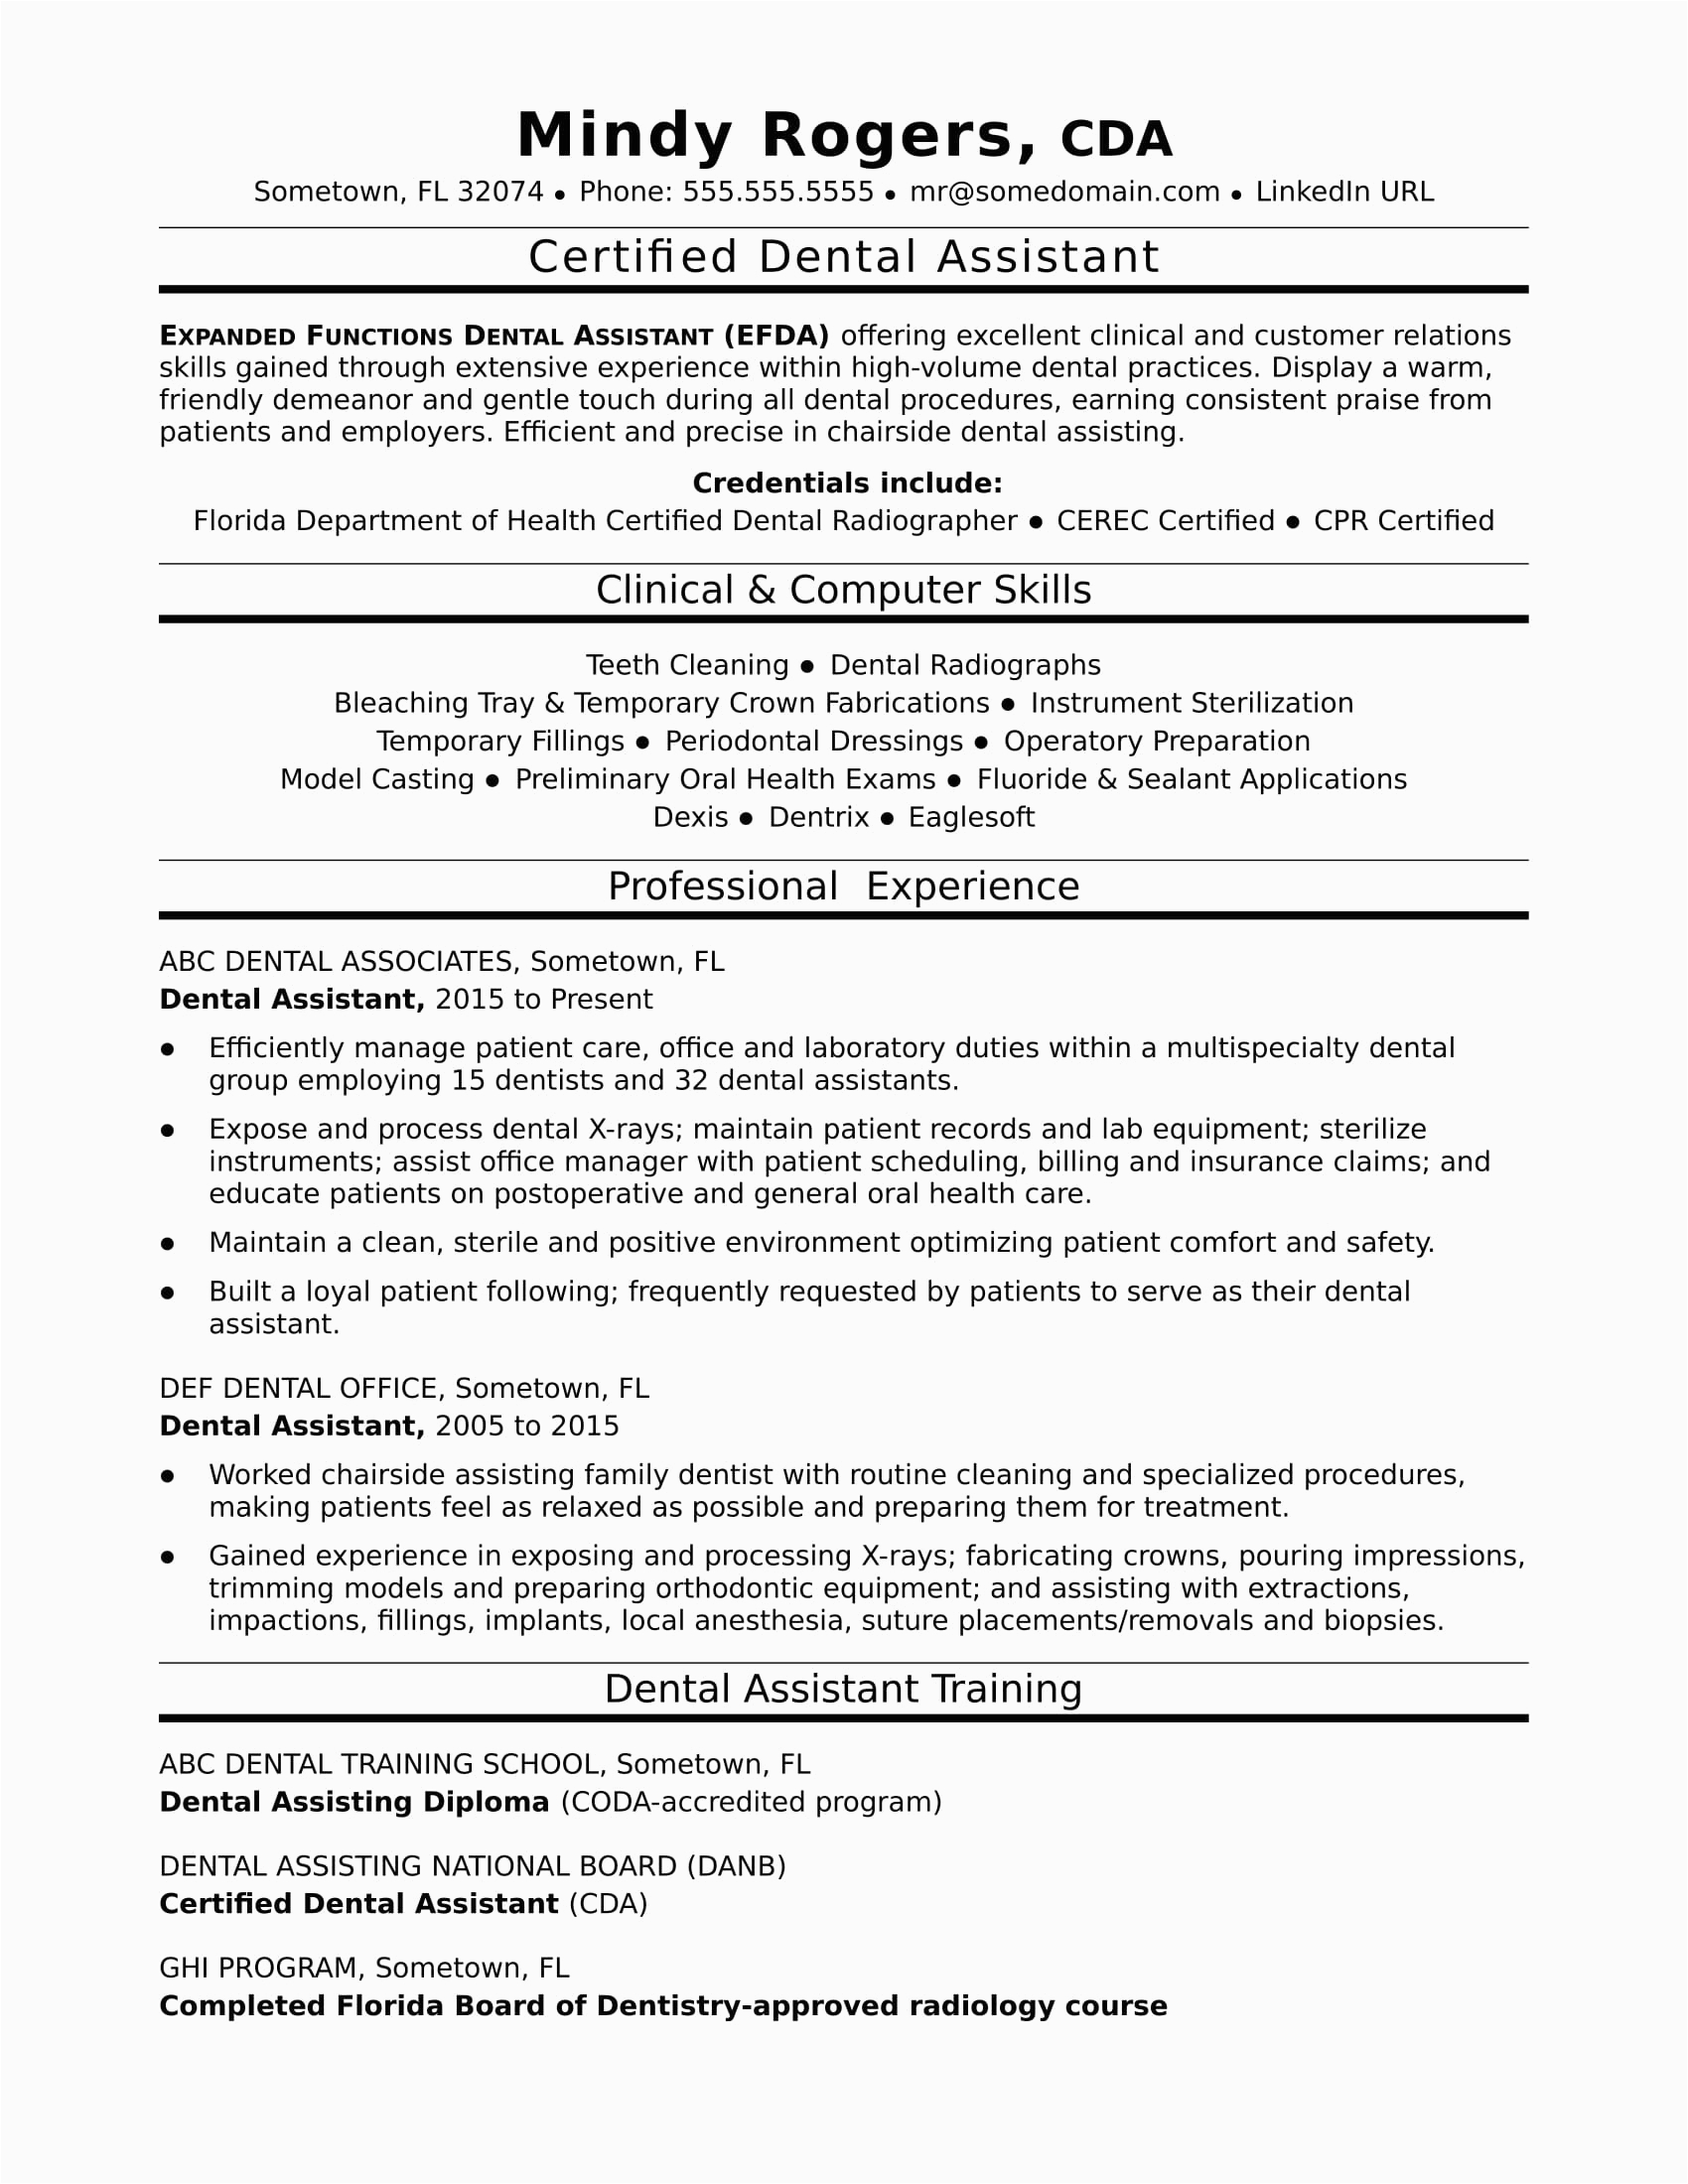 Sample Resume Objectives for Dental assistant Dental assistant Resume Sample